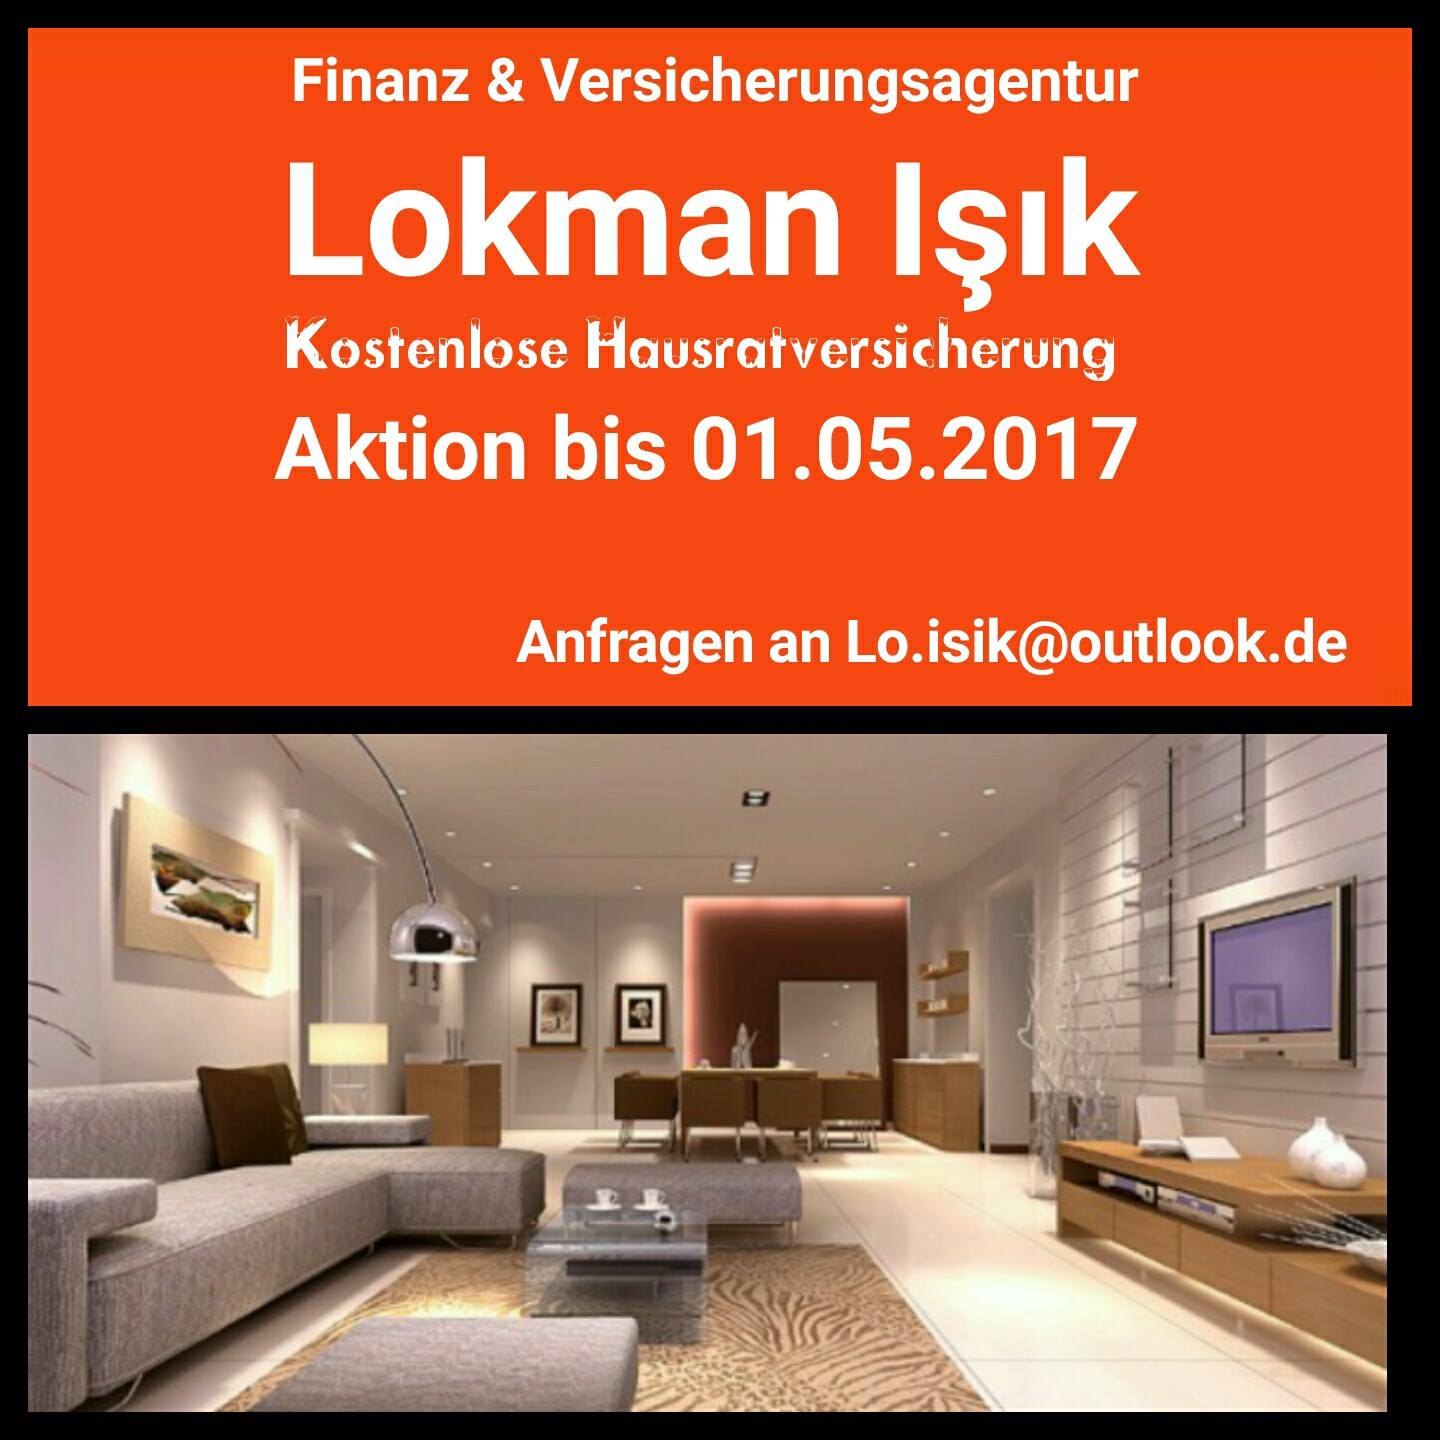 Finanz & Versicherungsagentur Lokman Isik